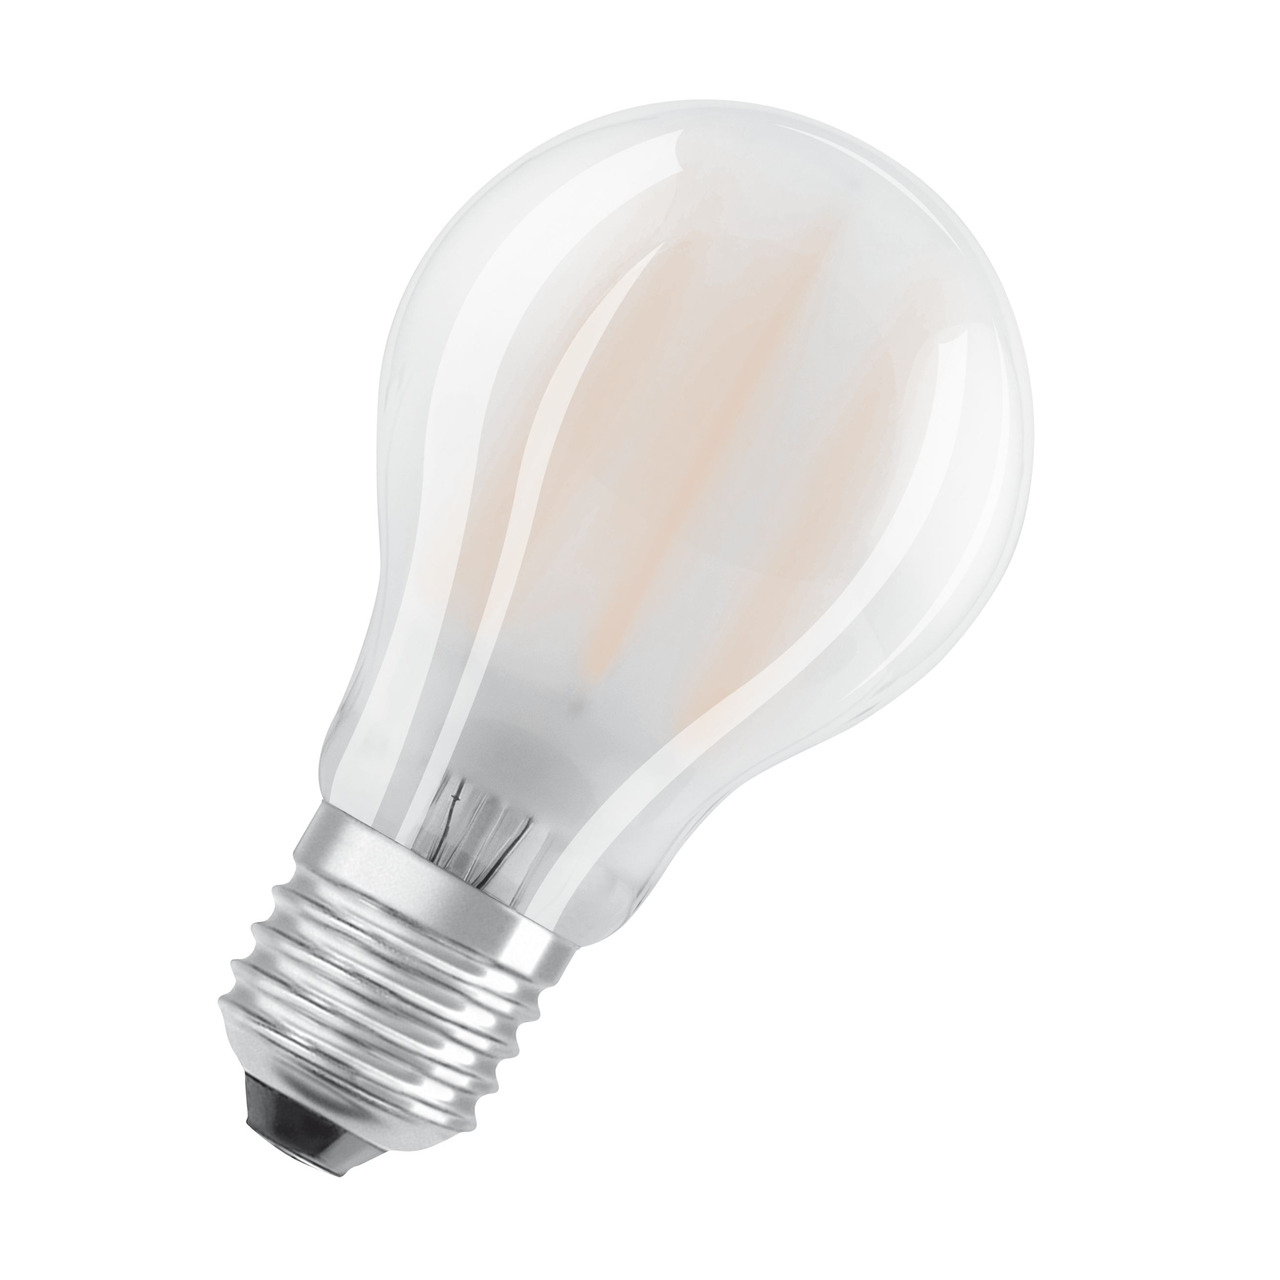 OSRAM 11-W-LED-Lampe A60- E27- 1521 lm- neutralweiss- matt